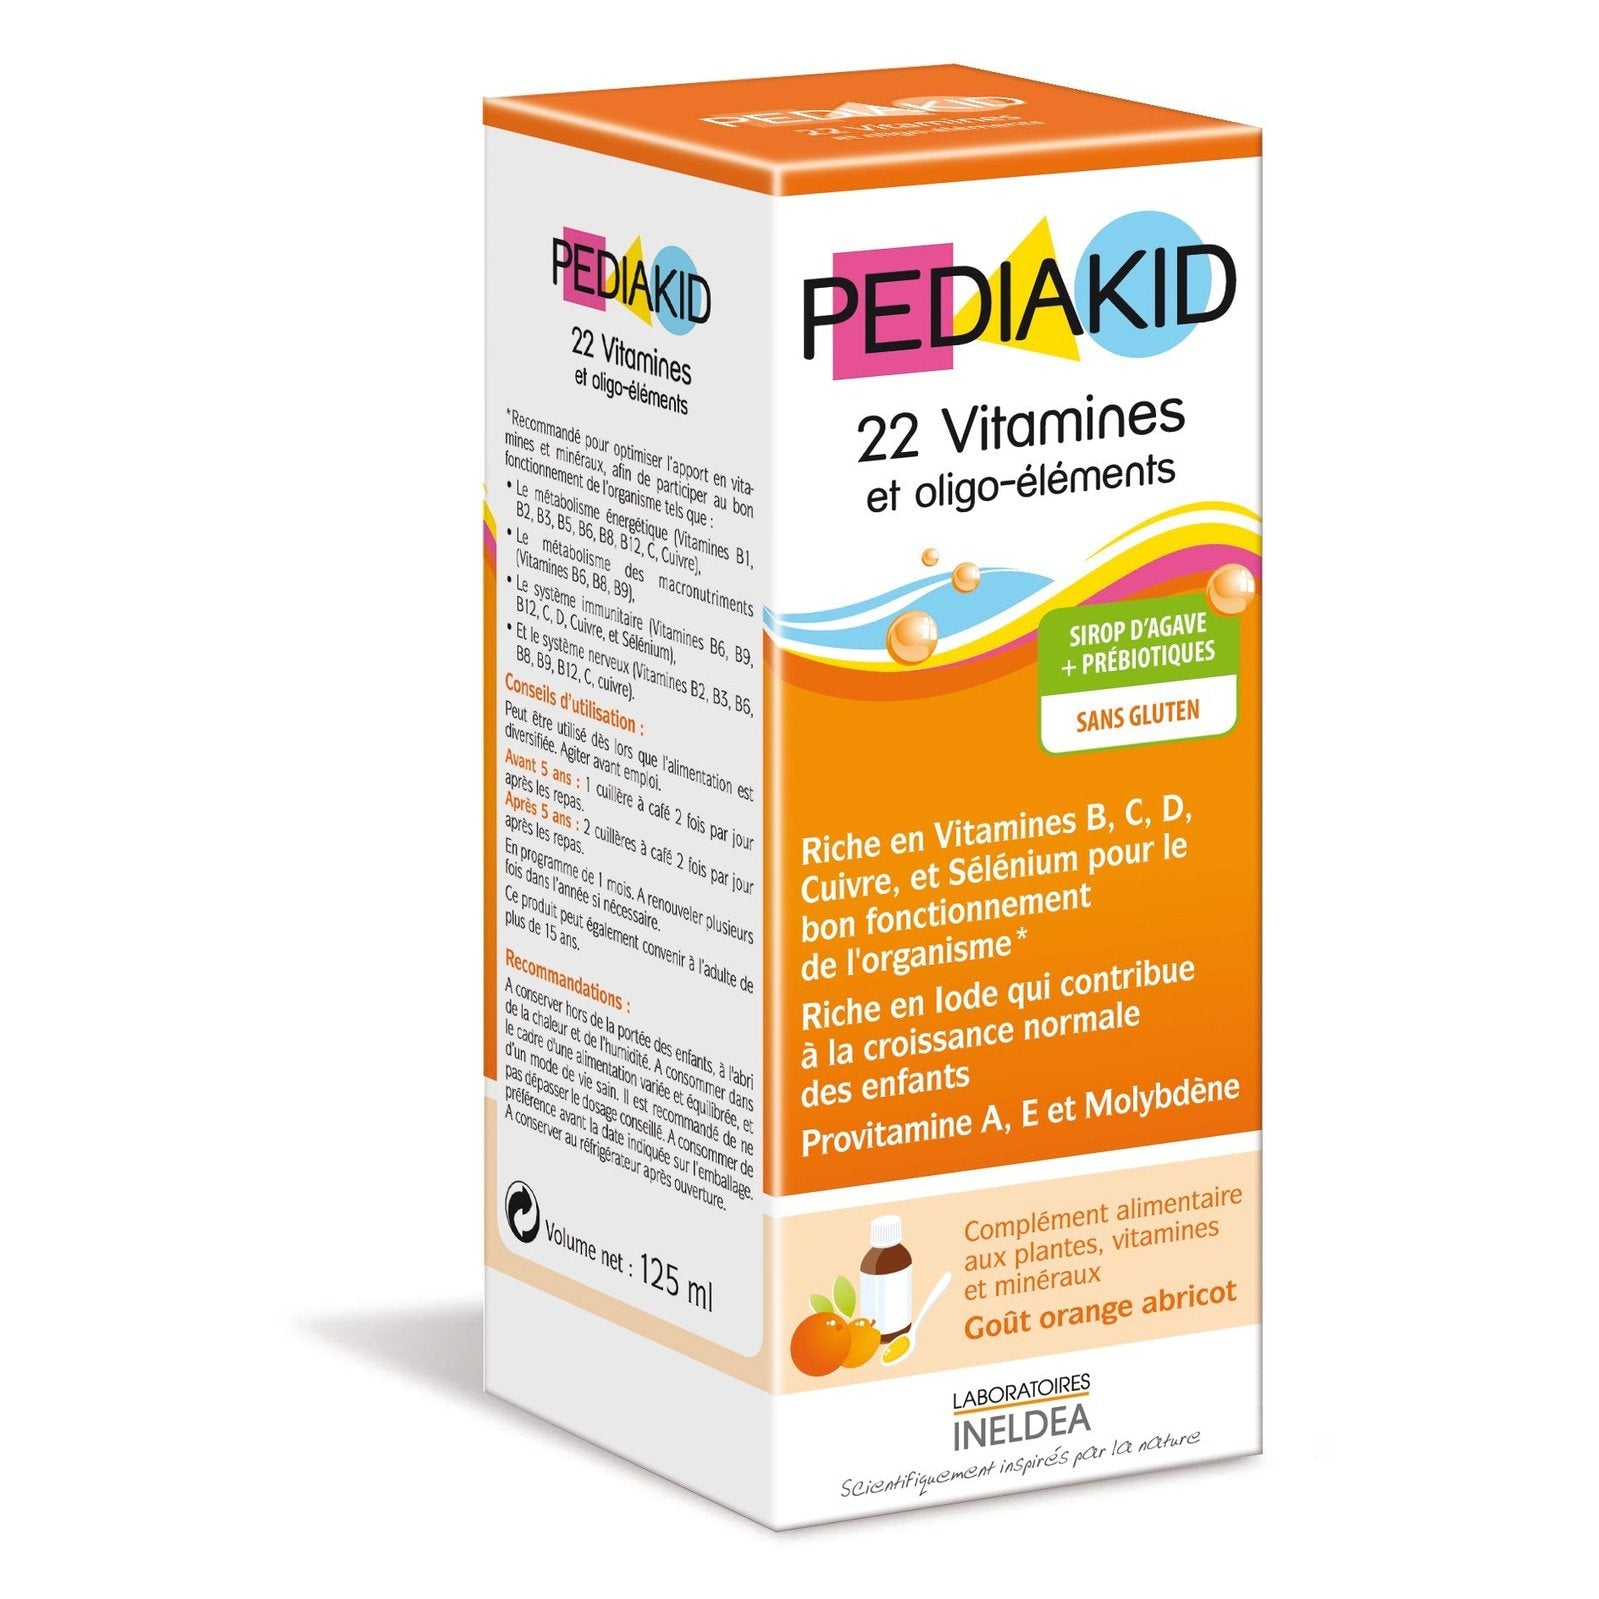 Pediakid 22 Vitamines et oligo-éléments